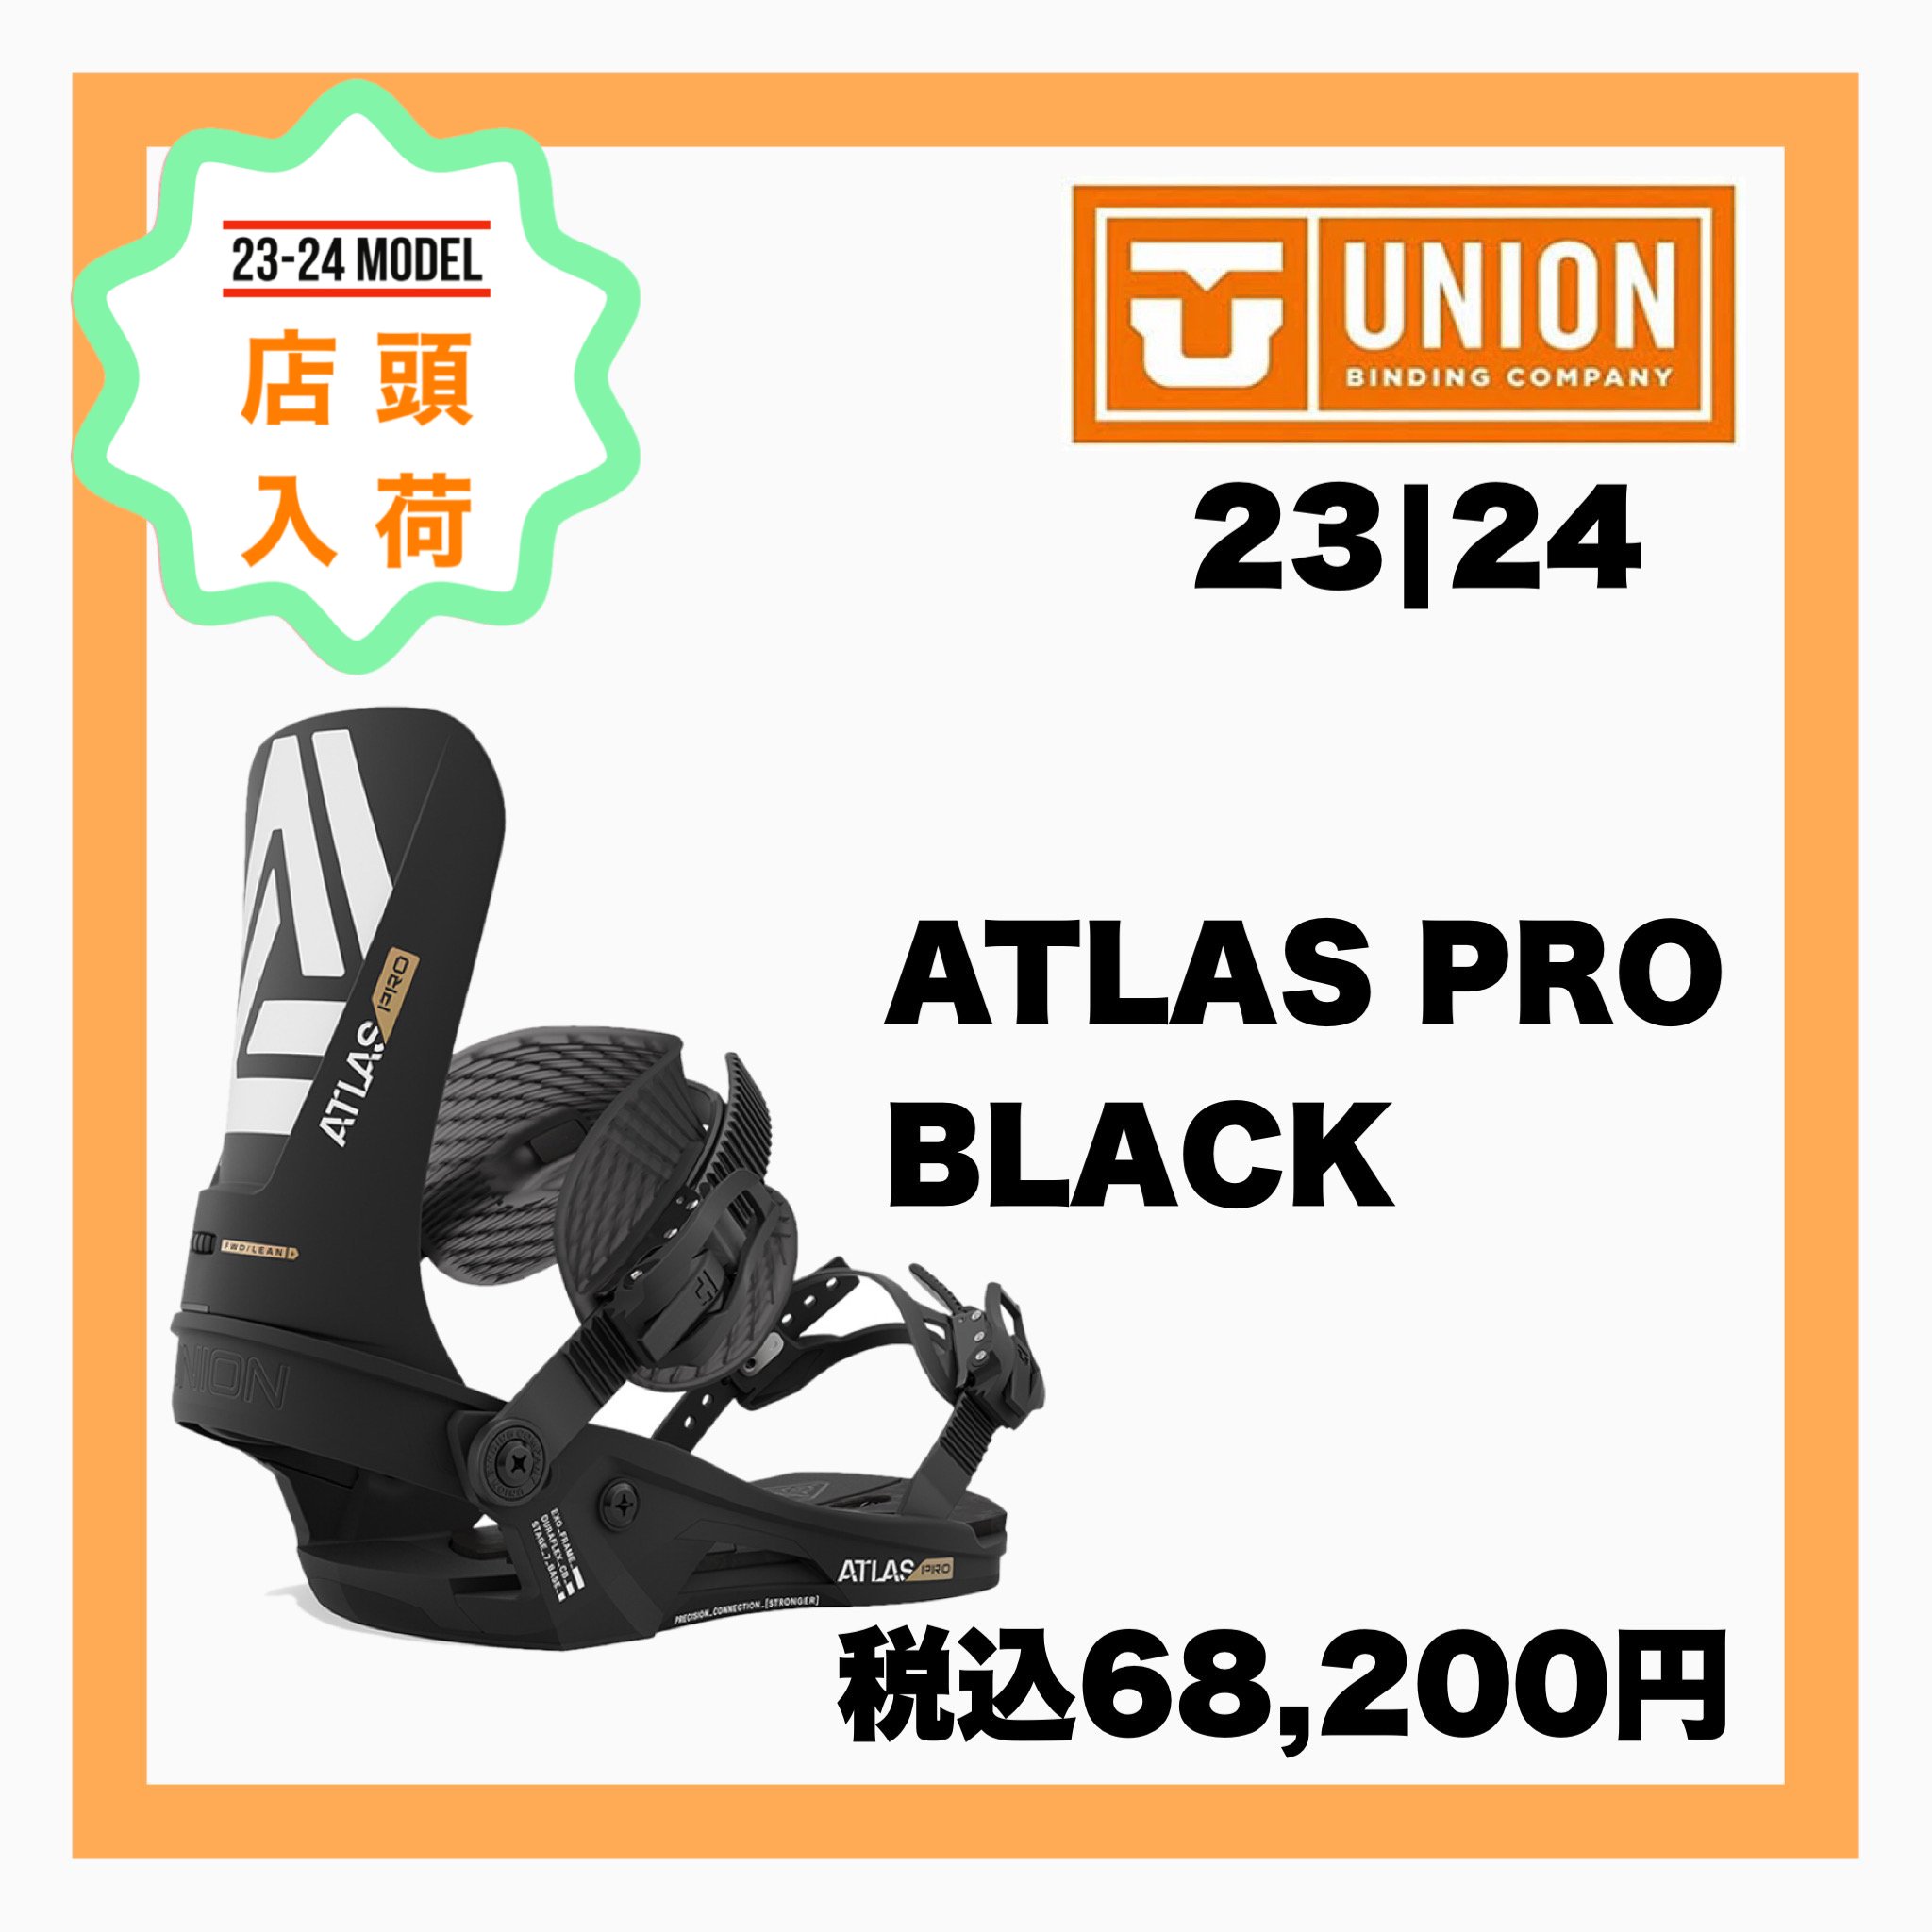 2023-2024 UNION 【 ATLAS PRO BLACK 】 - JOINT HOUSE